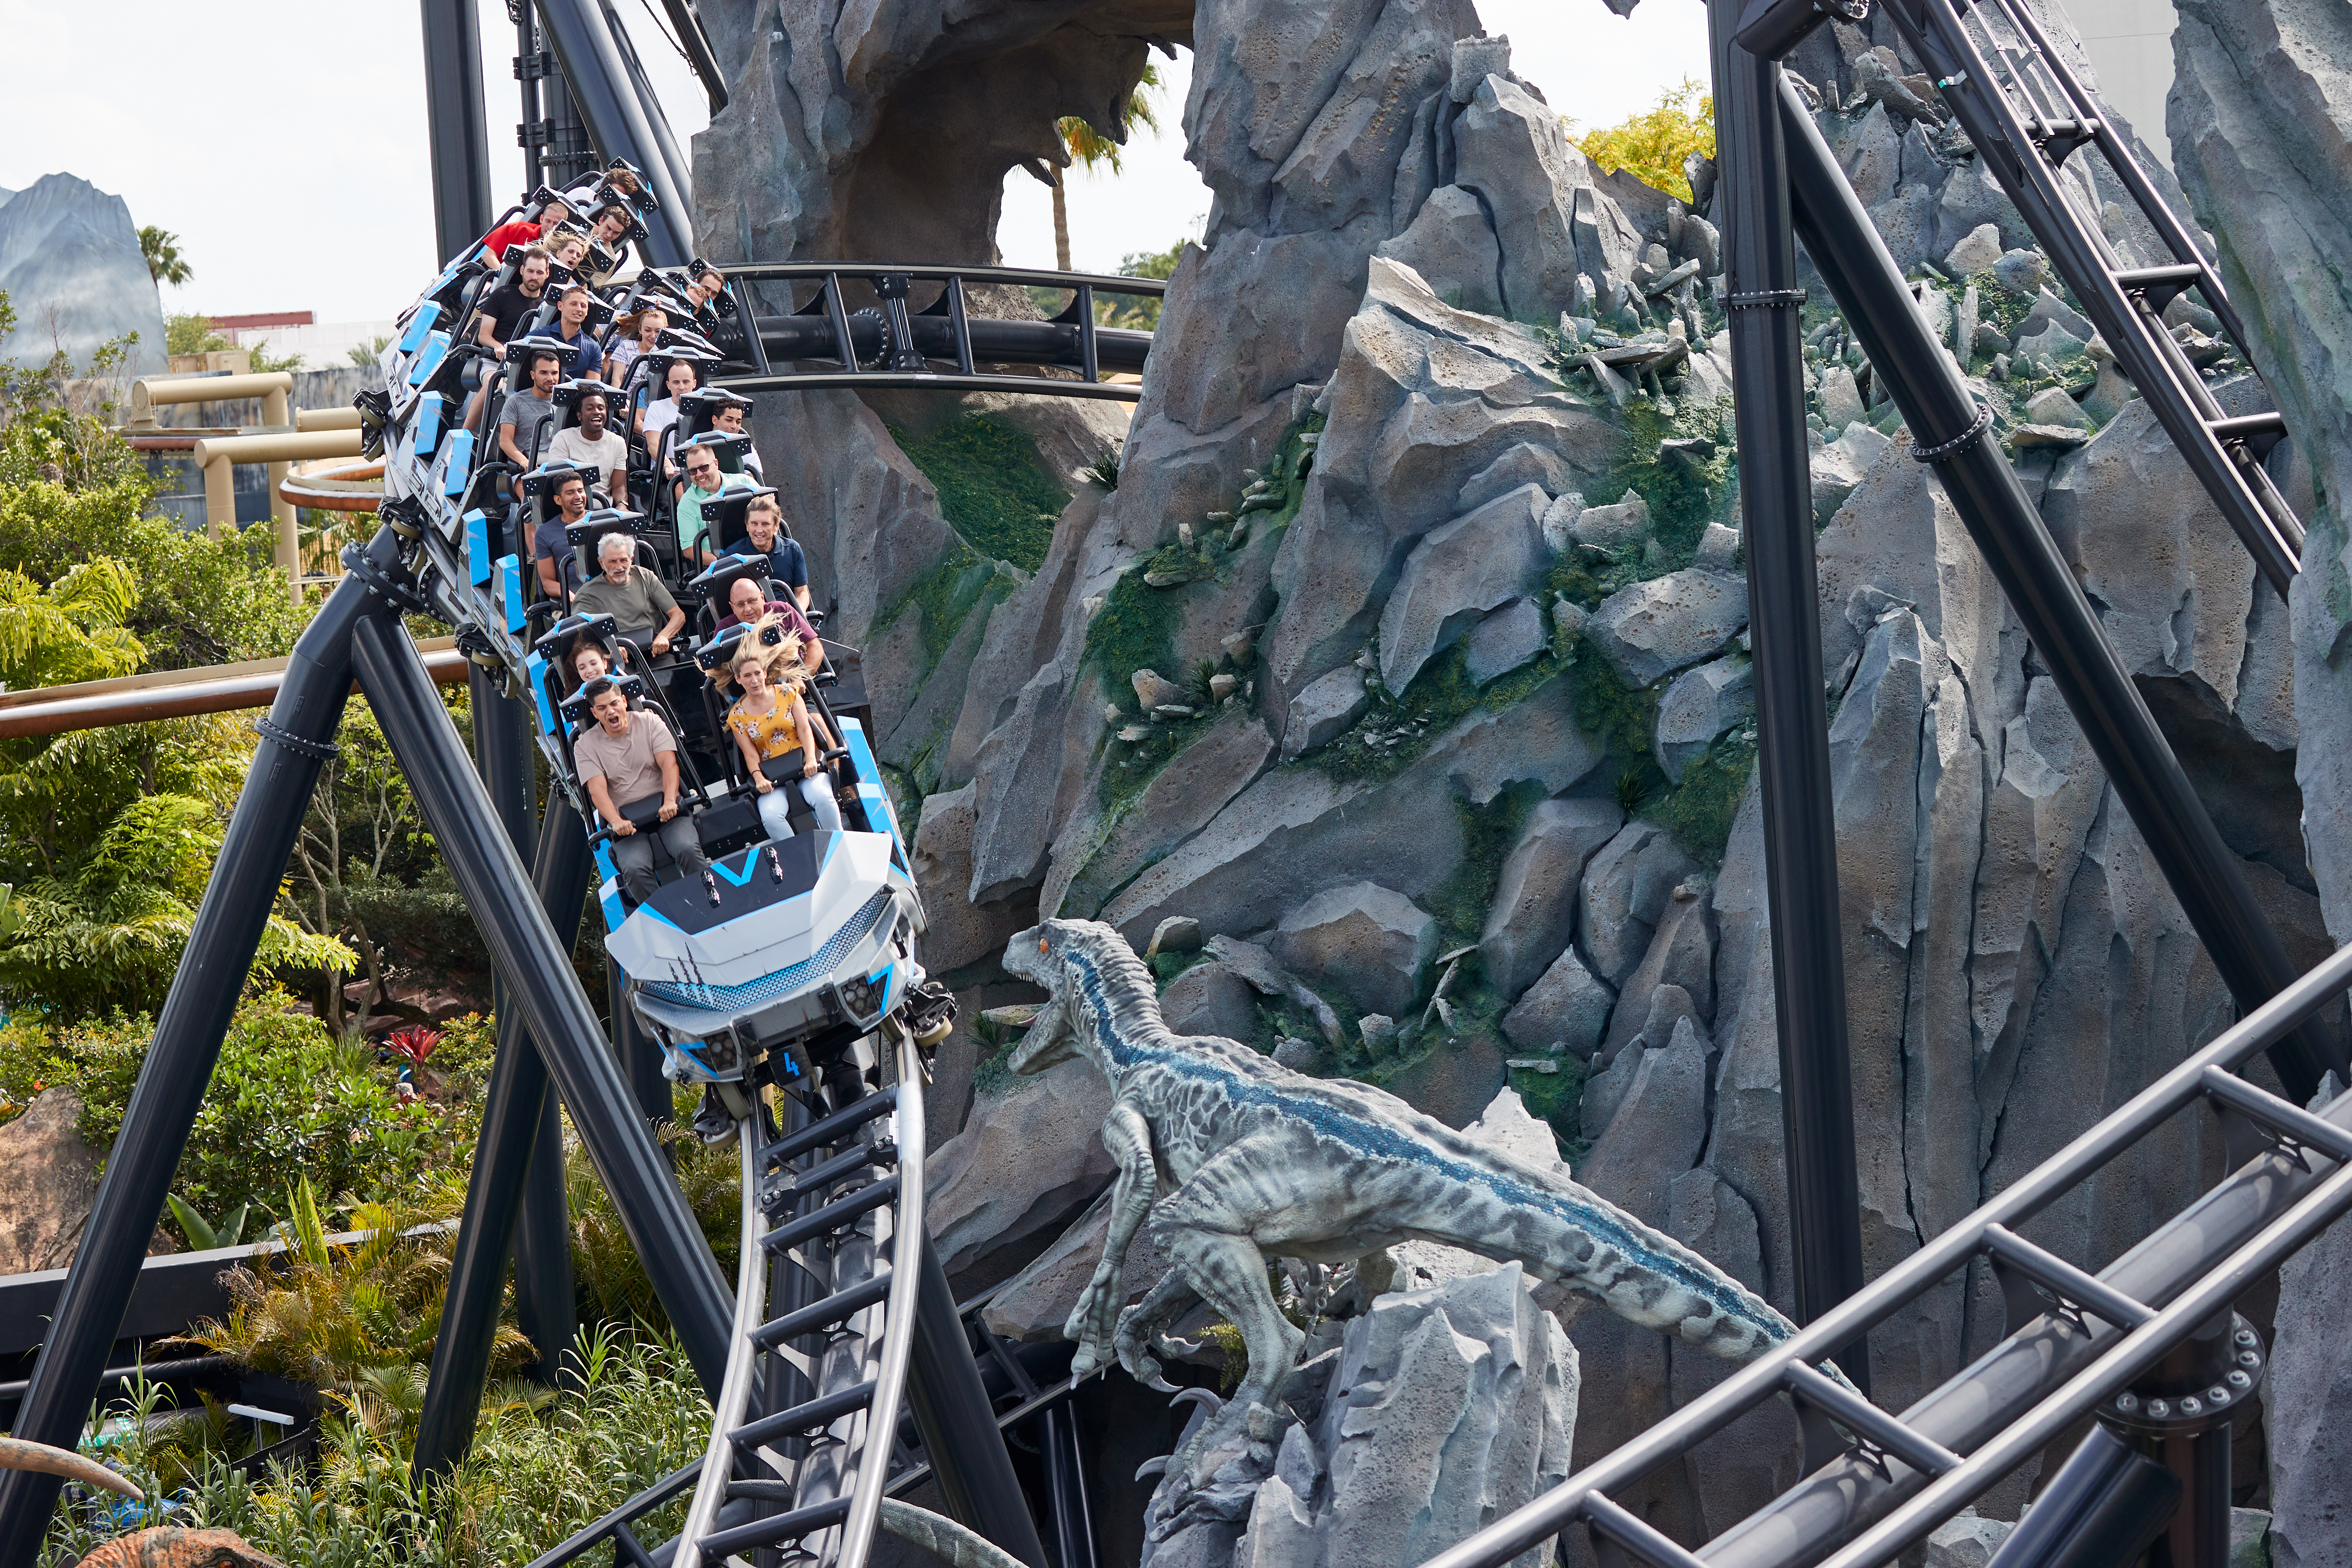 Jurassic World Velocicoaster – La montaña rusa más esperada y feroz – abre en Universal Orlando Resort